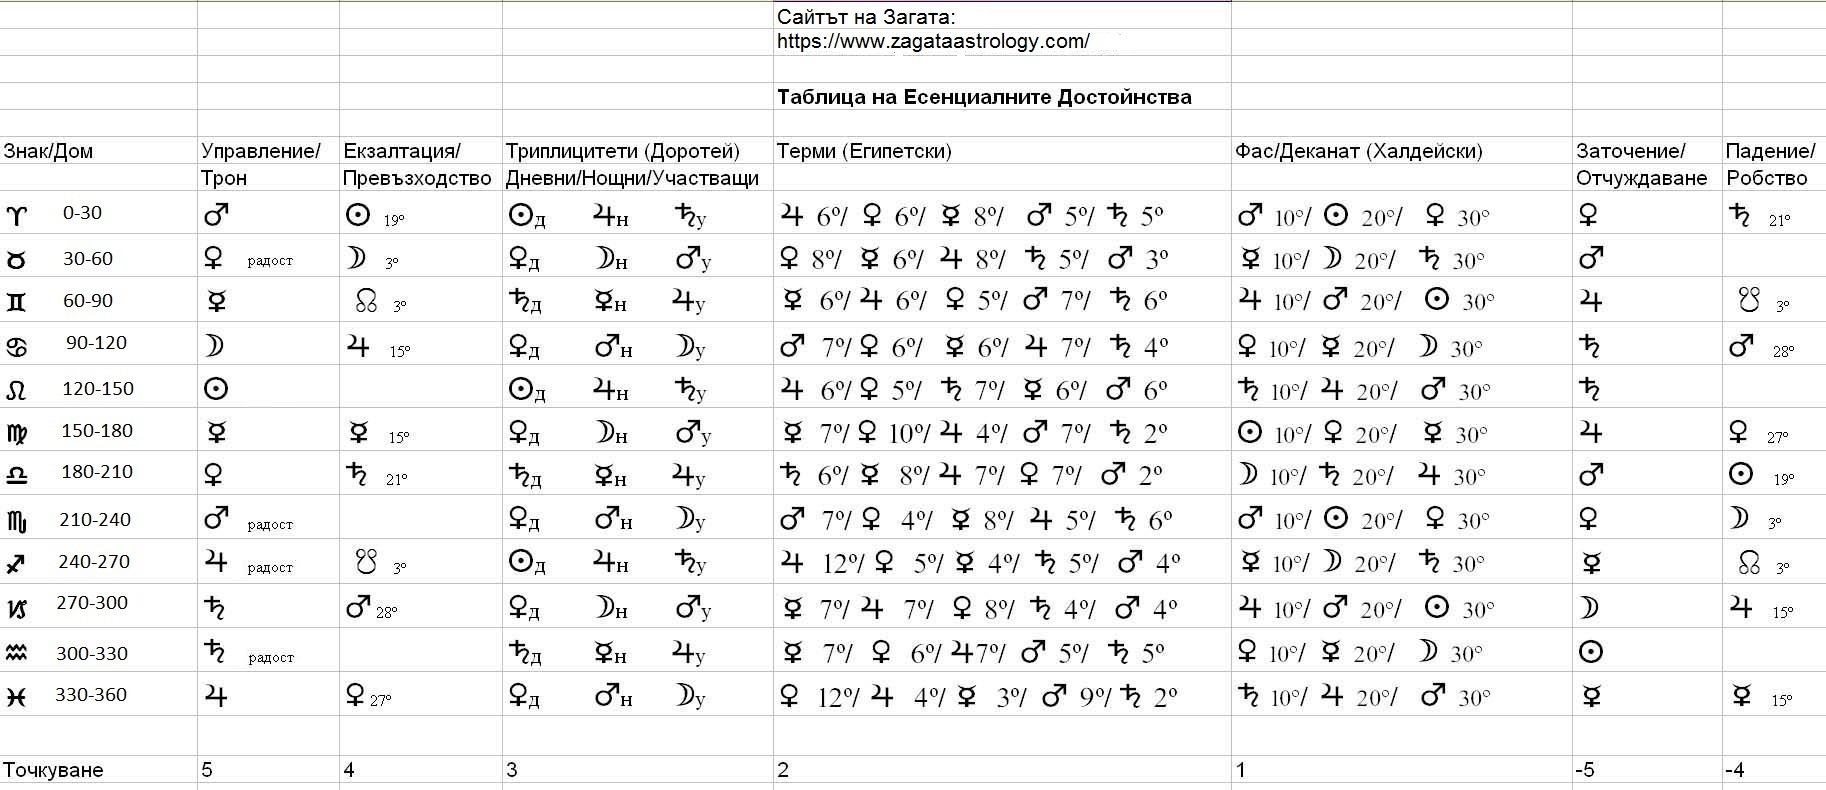 Астрологичен речник - таблица с есенциалните достойнства